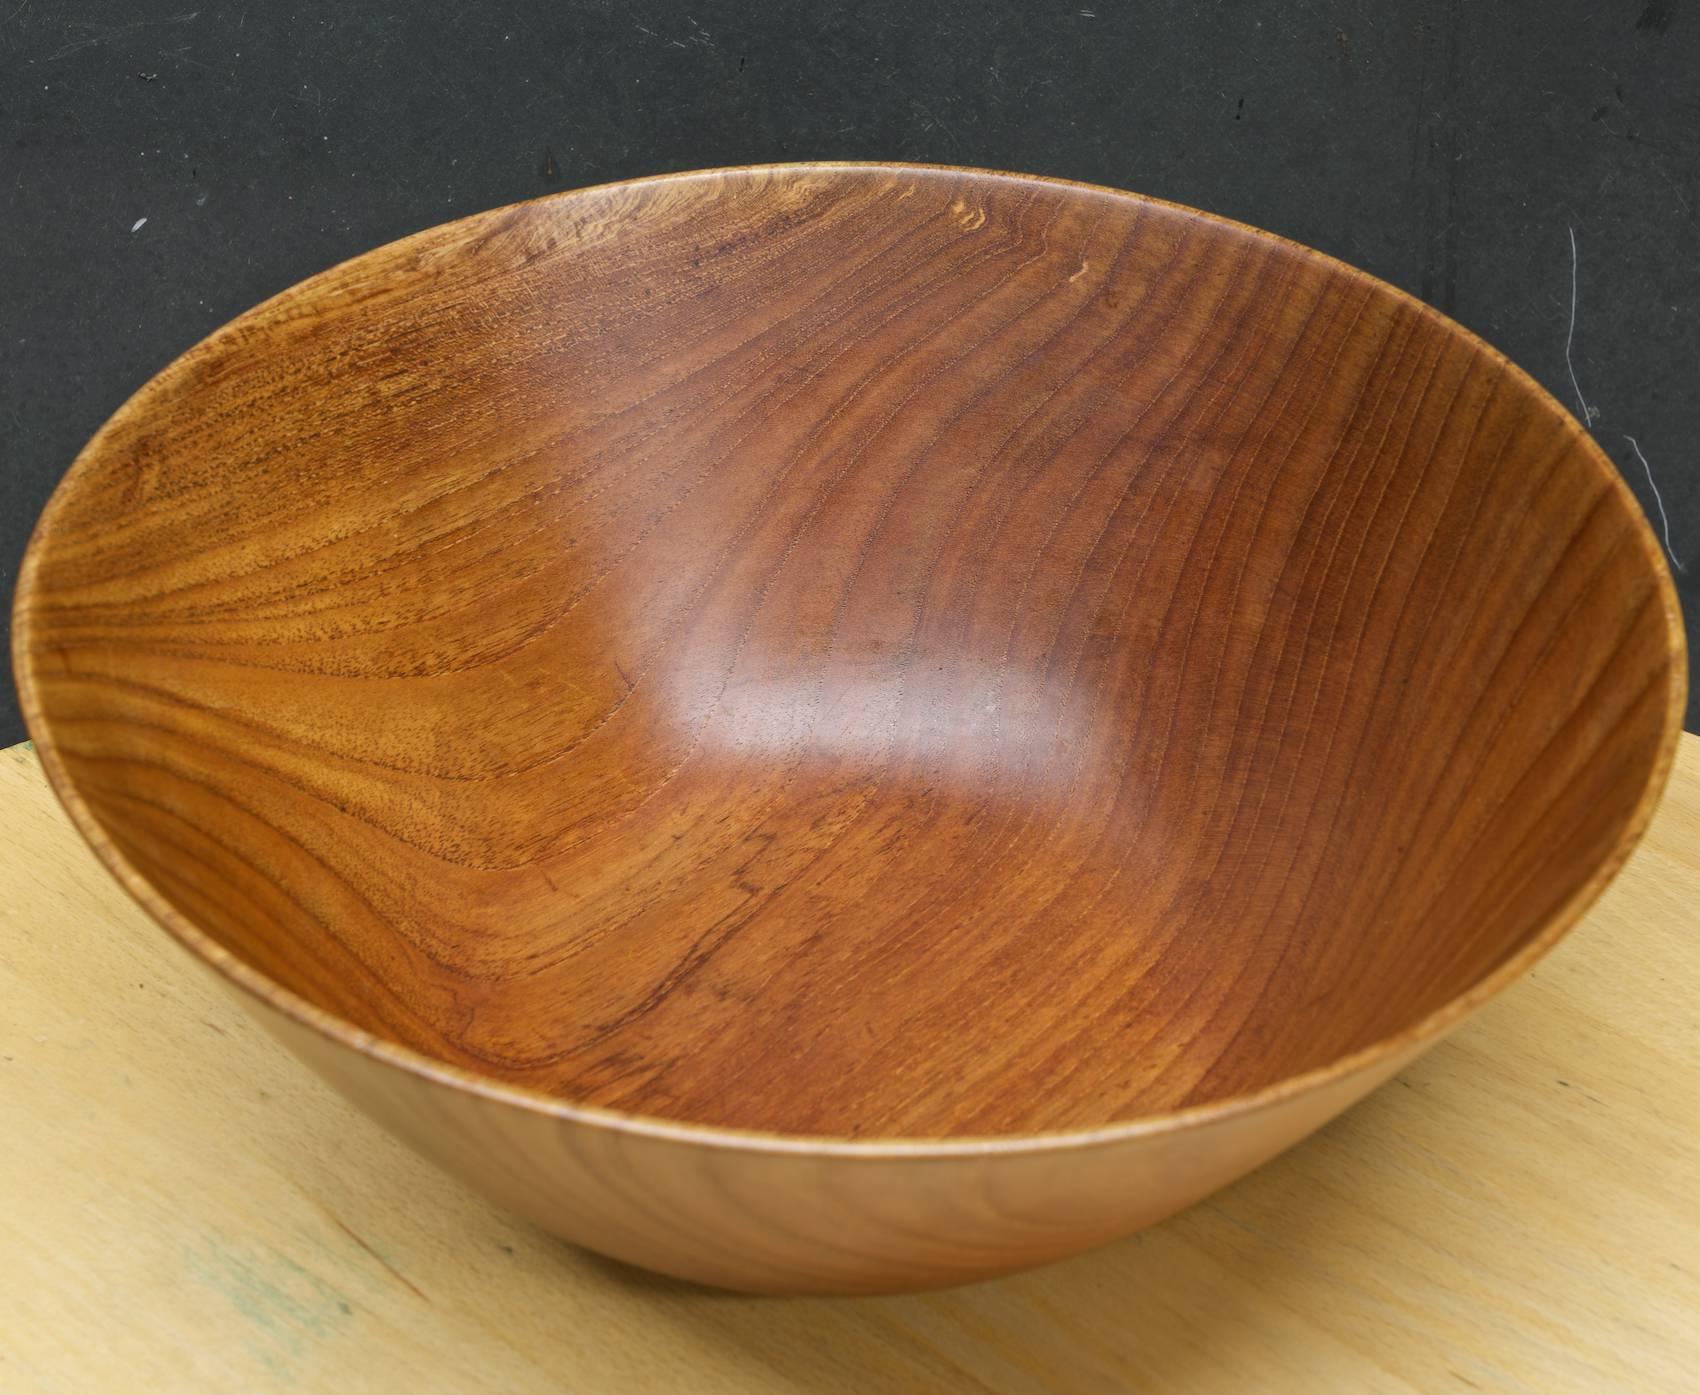 Large turned wood centerpiece bowl. Signed.

P.915
Espenet,
Siamese teak.